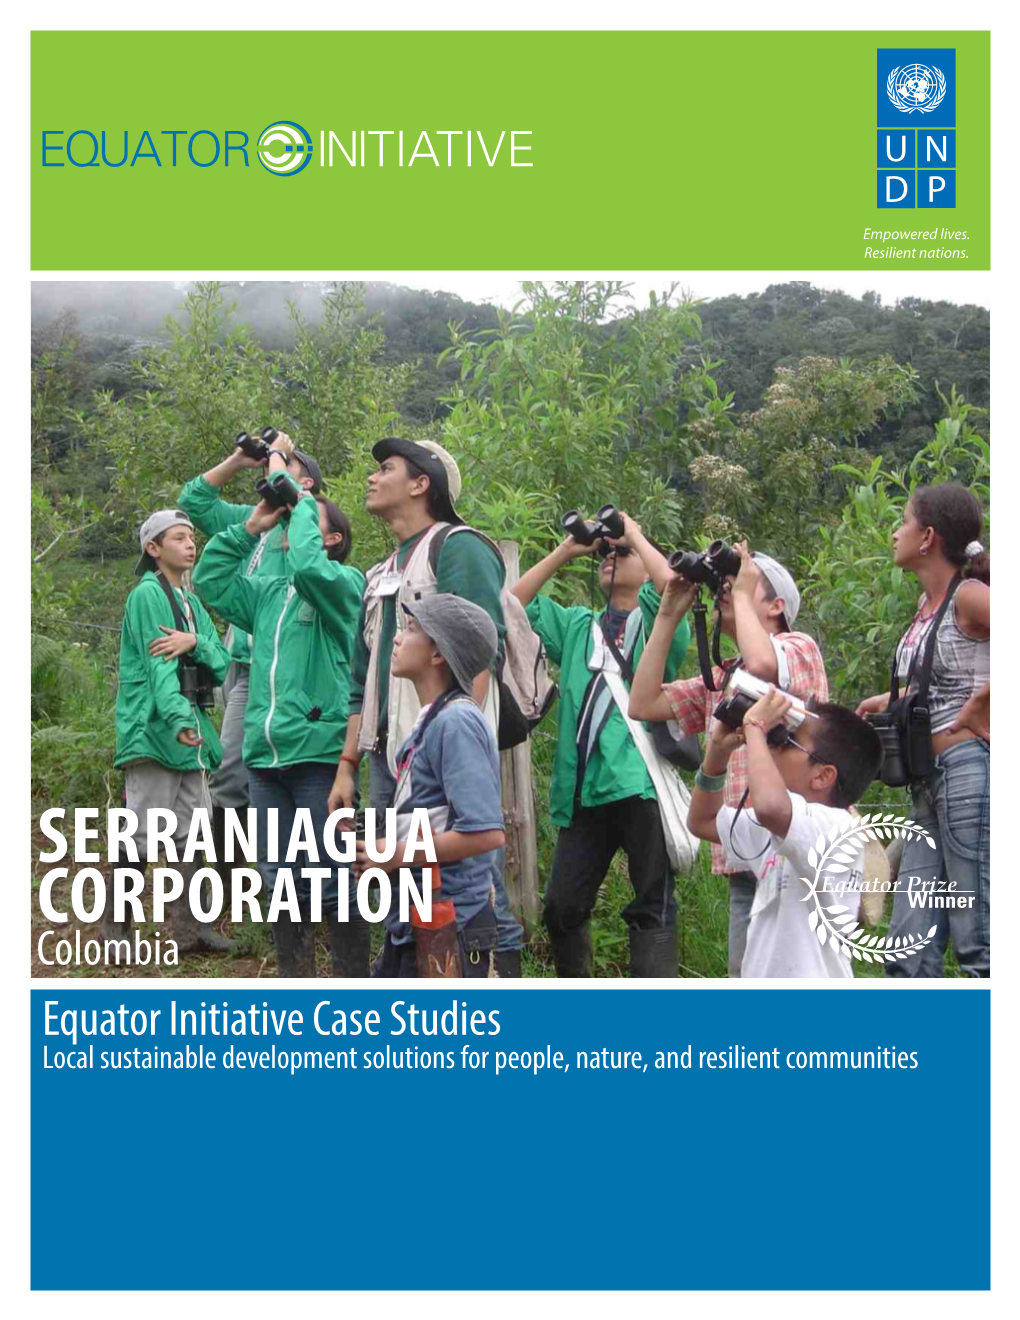 Serraniagua Corporation